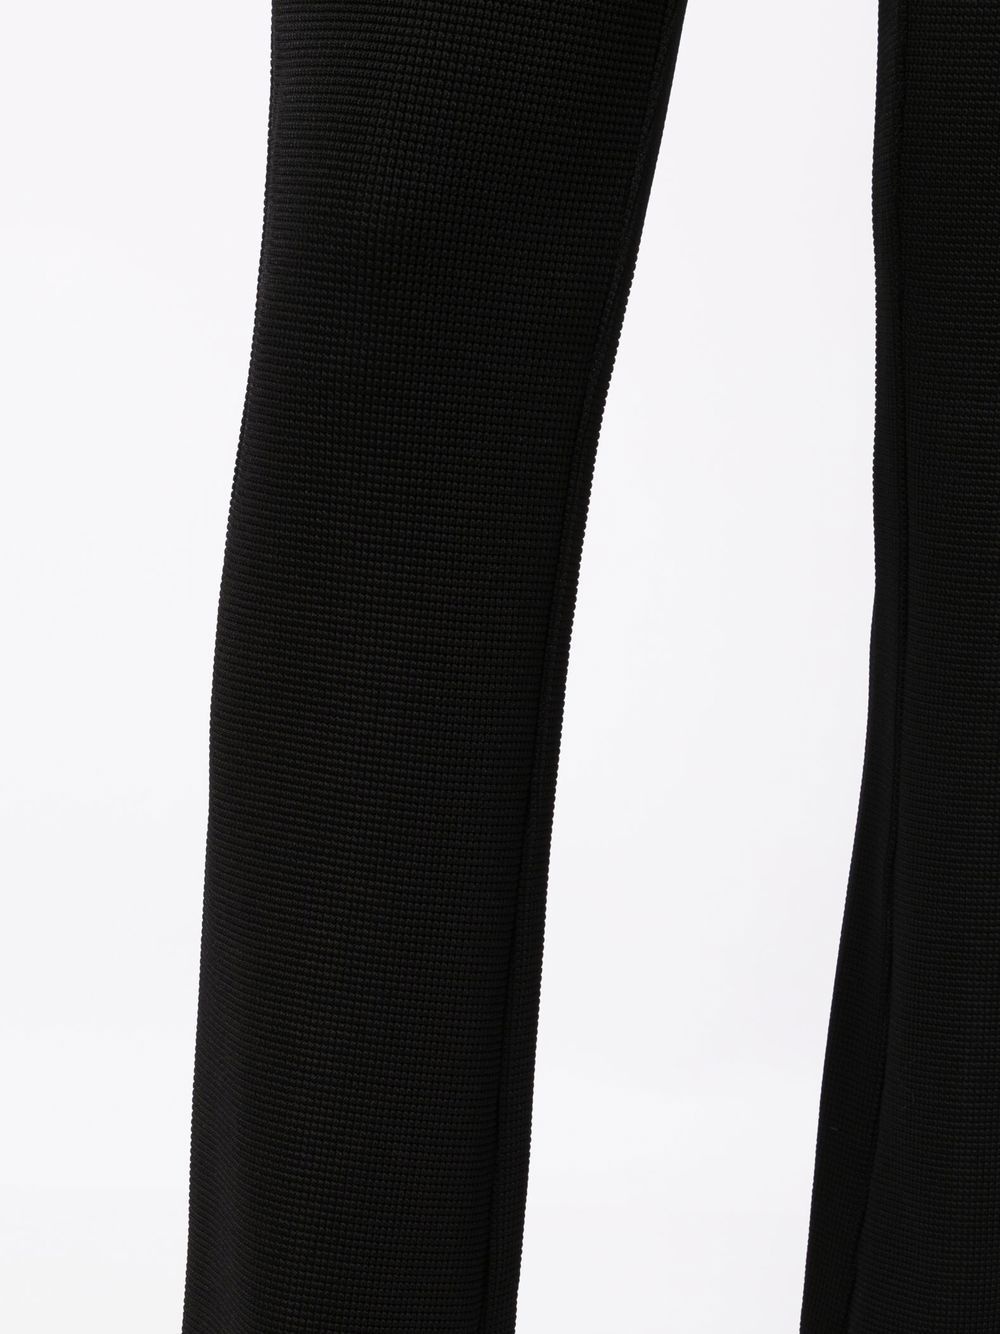 high-waist knitted trouser - 5